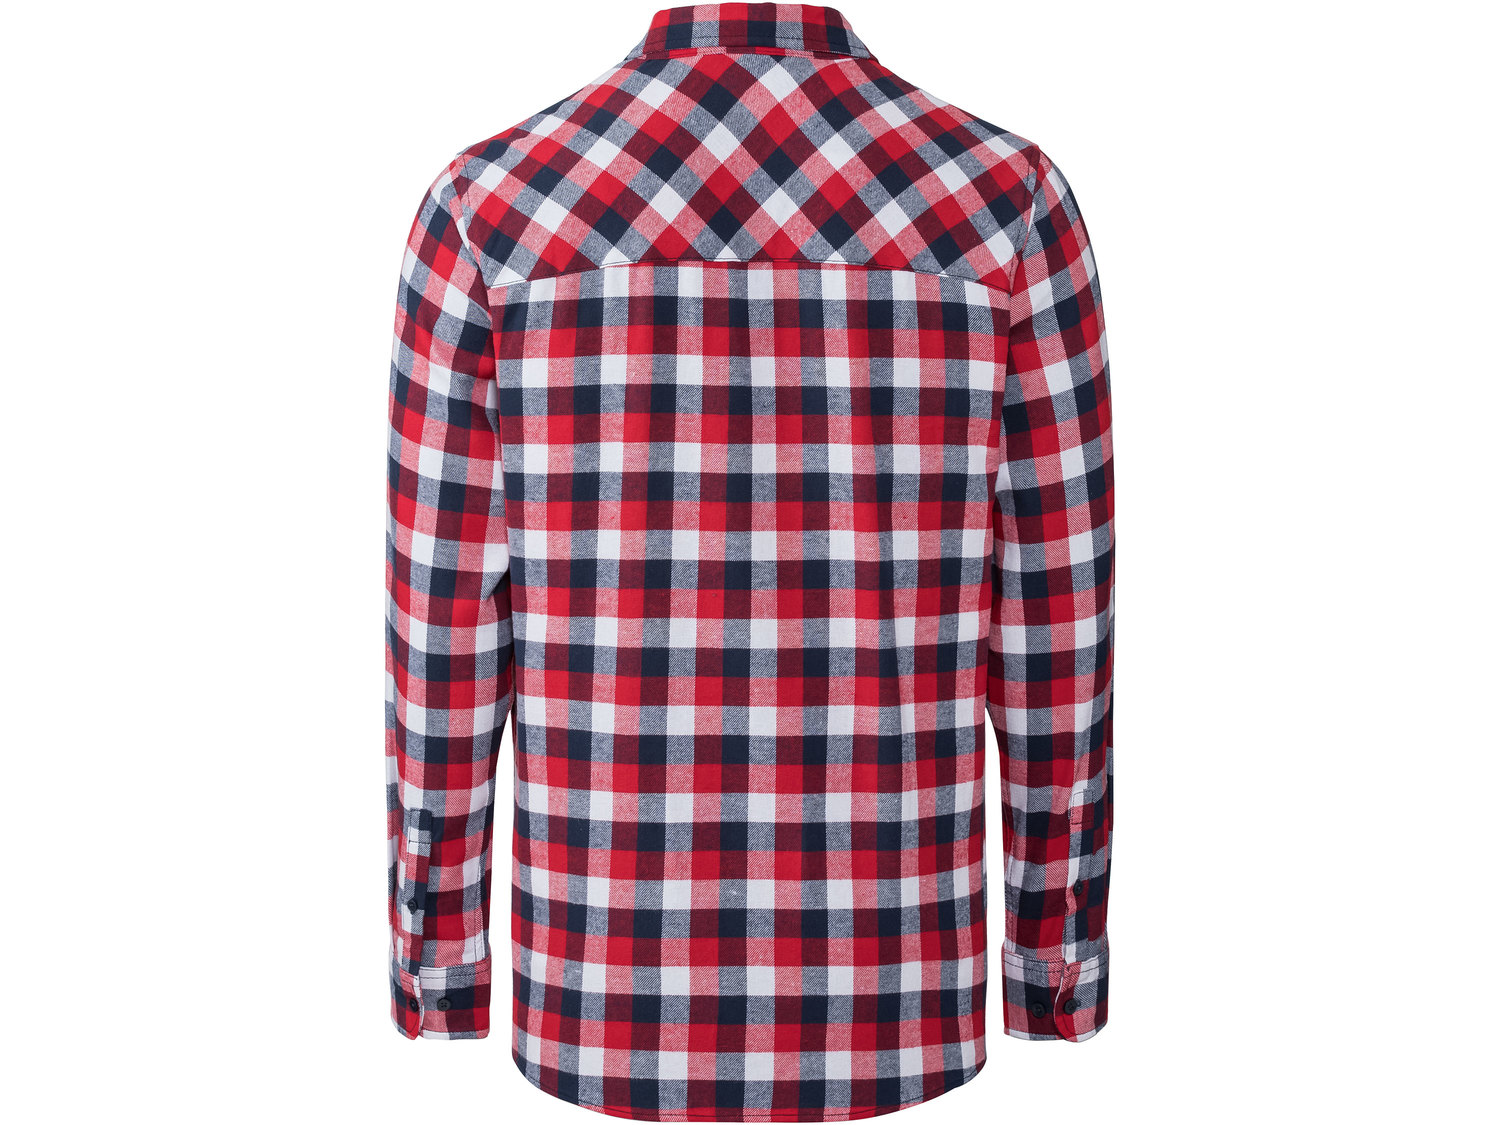 Koszula flanelowa Livergy, cena 29,99 PLN 
- koszula flanelowa w kratkę to klasyczny ...